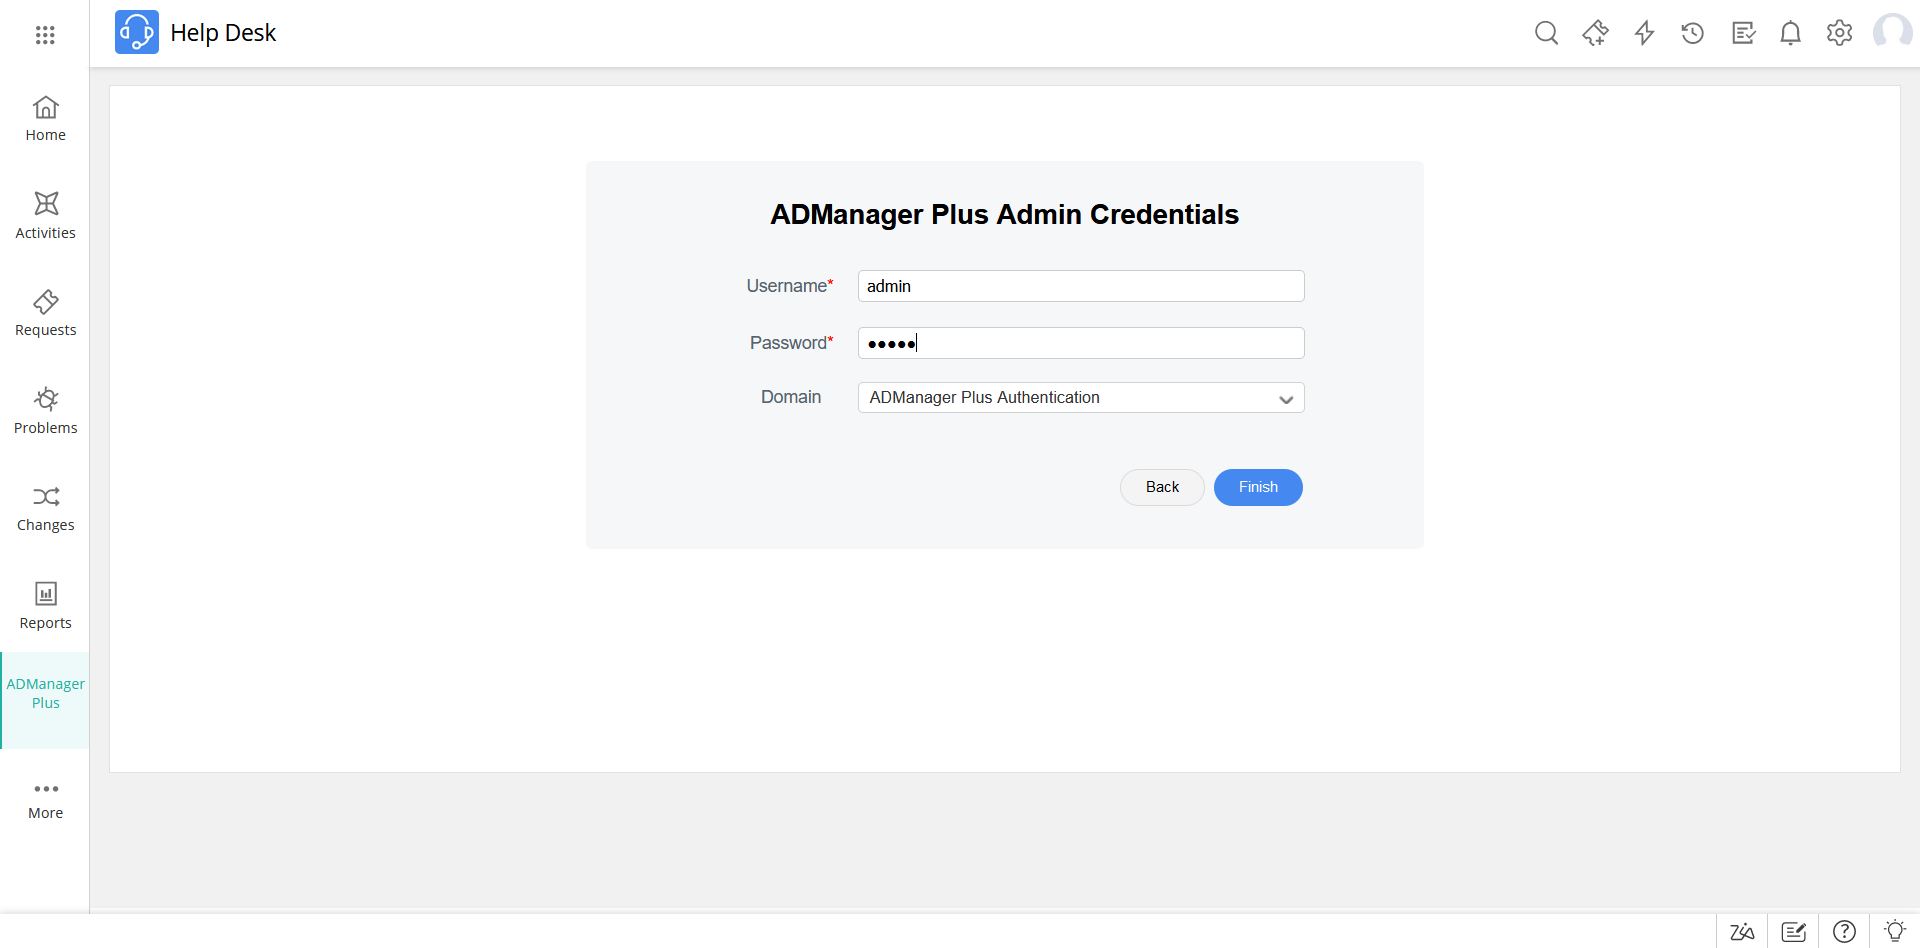 ADManager Plus Admin Credentials